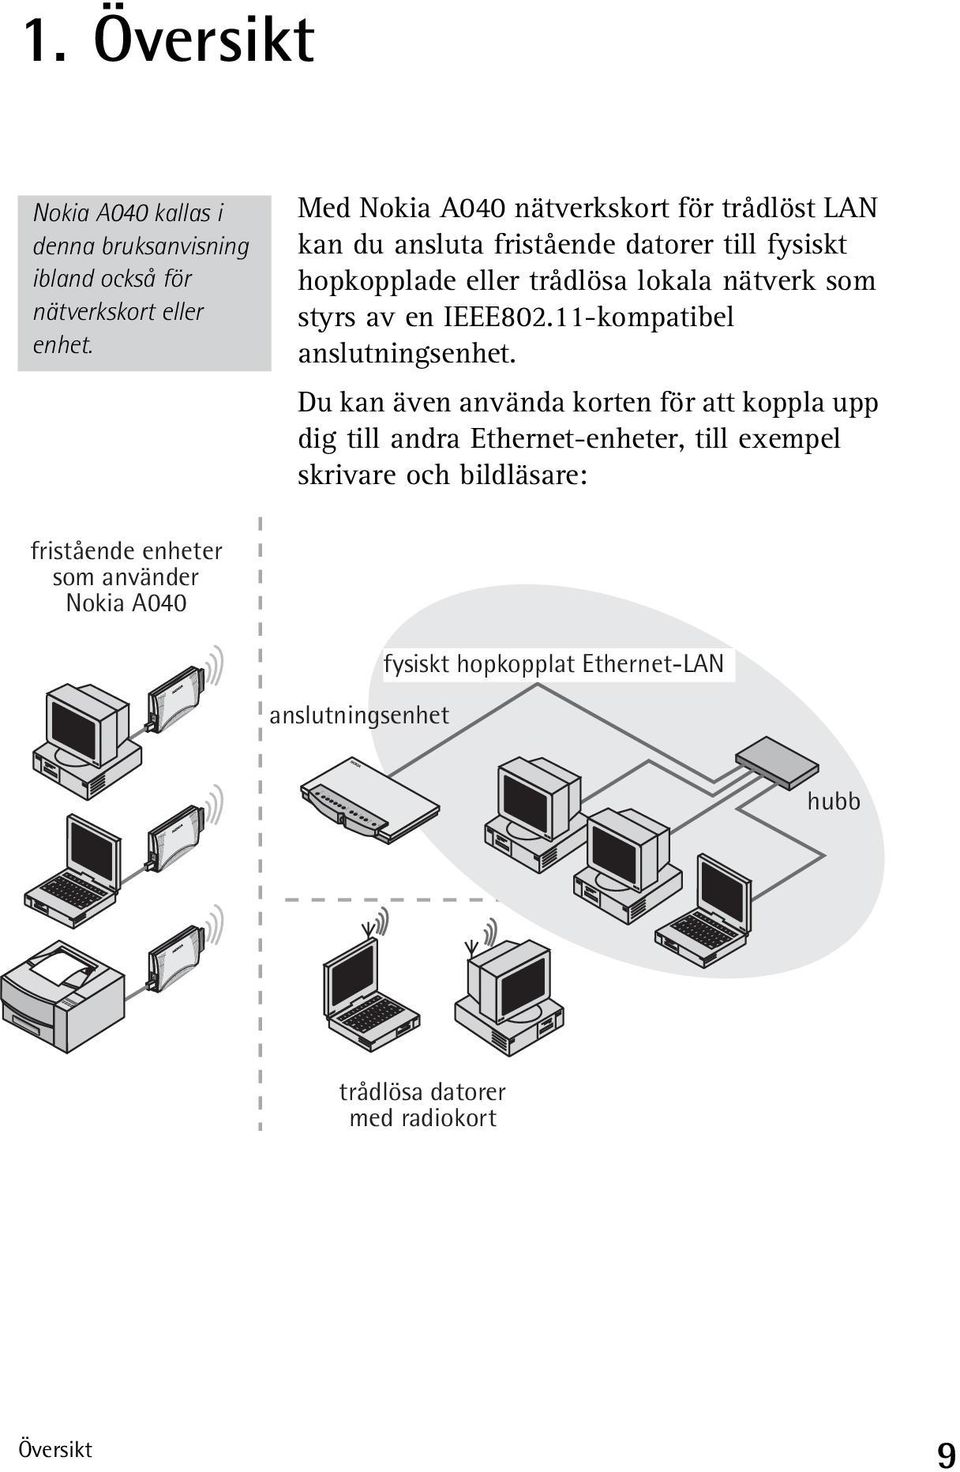 Med Nokia A040 nätverkskort för trådlöst LAN kan du ansluta fristående datorer till fysiskt hopkopplade eller trådlösa lokala nätverk som styrs av en IEEE802.